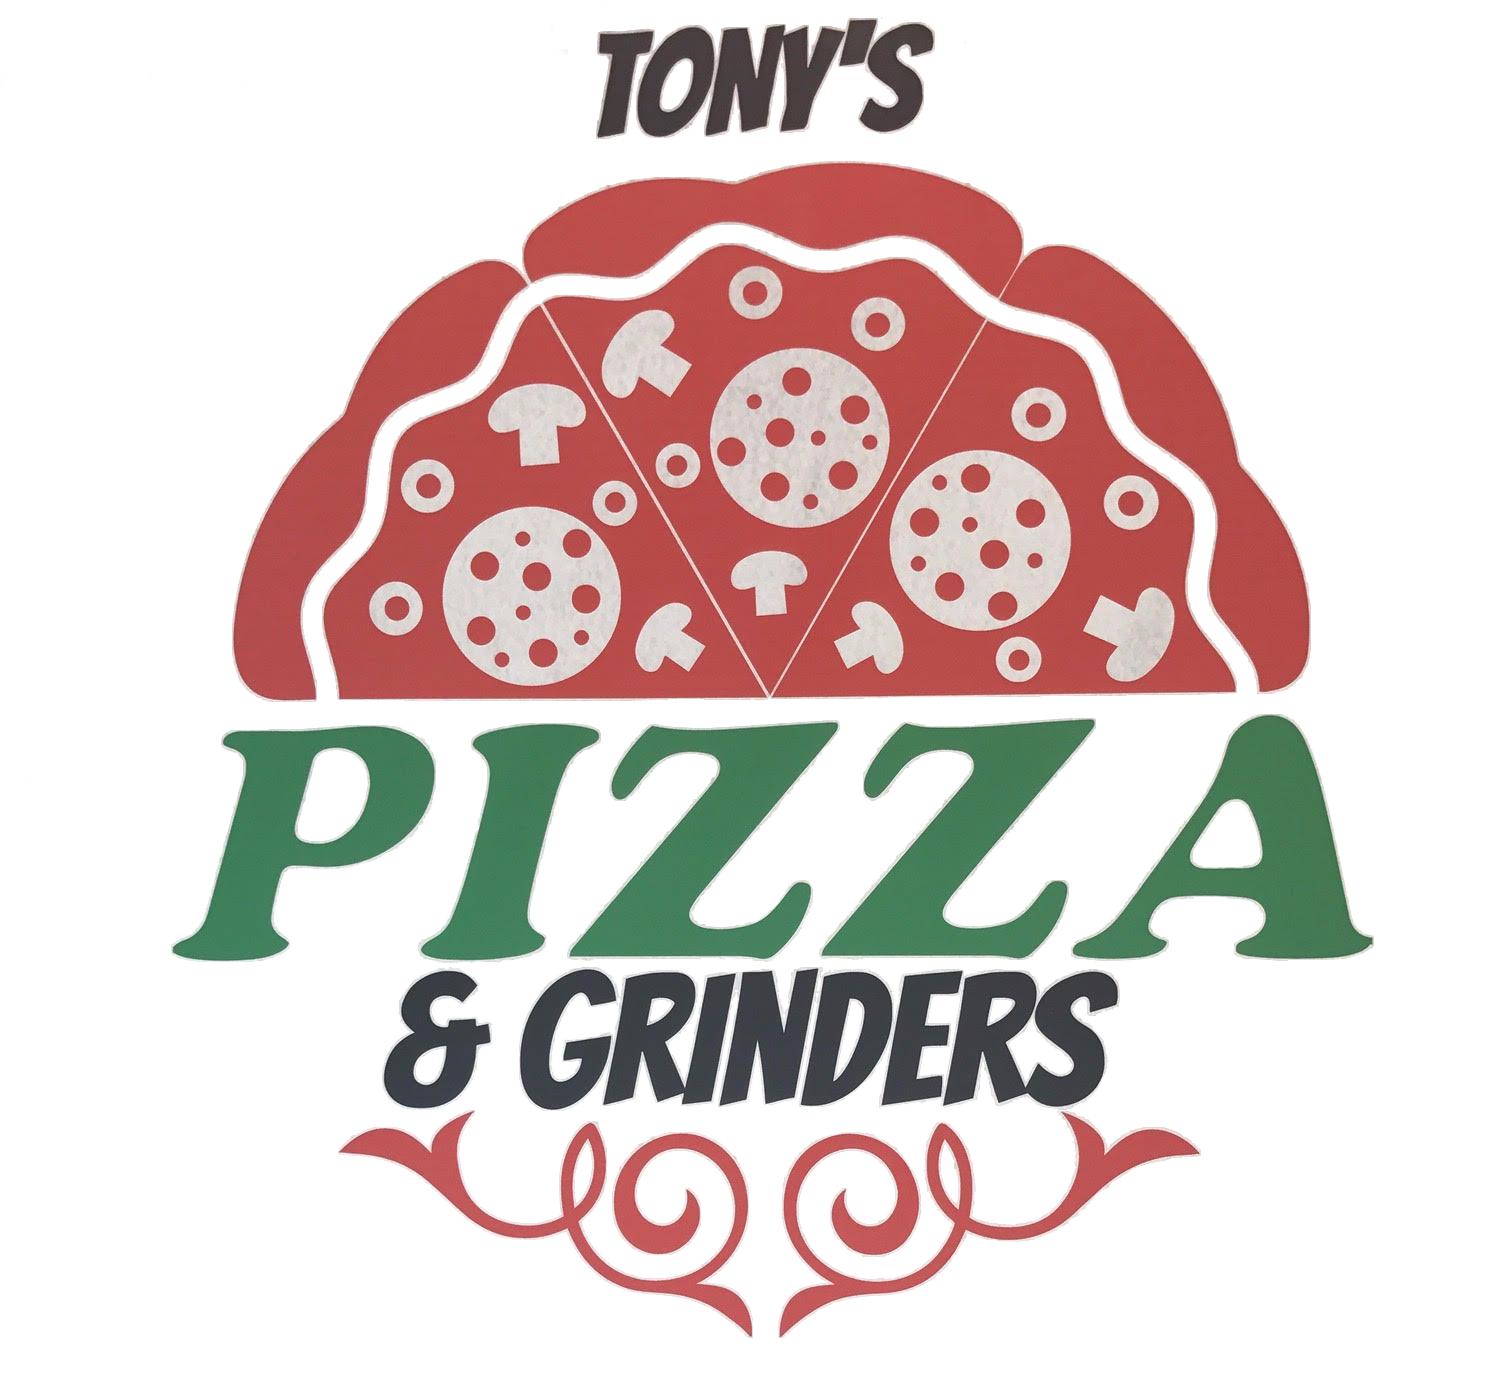 Tony's Logo - Home - Tony's Pizza & Grinders